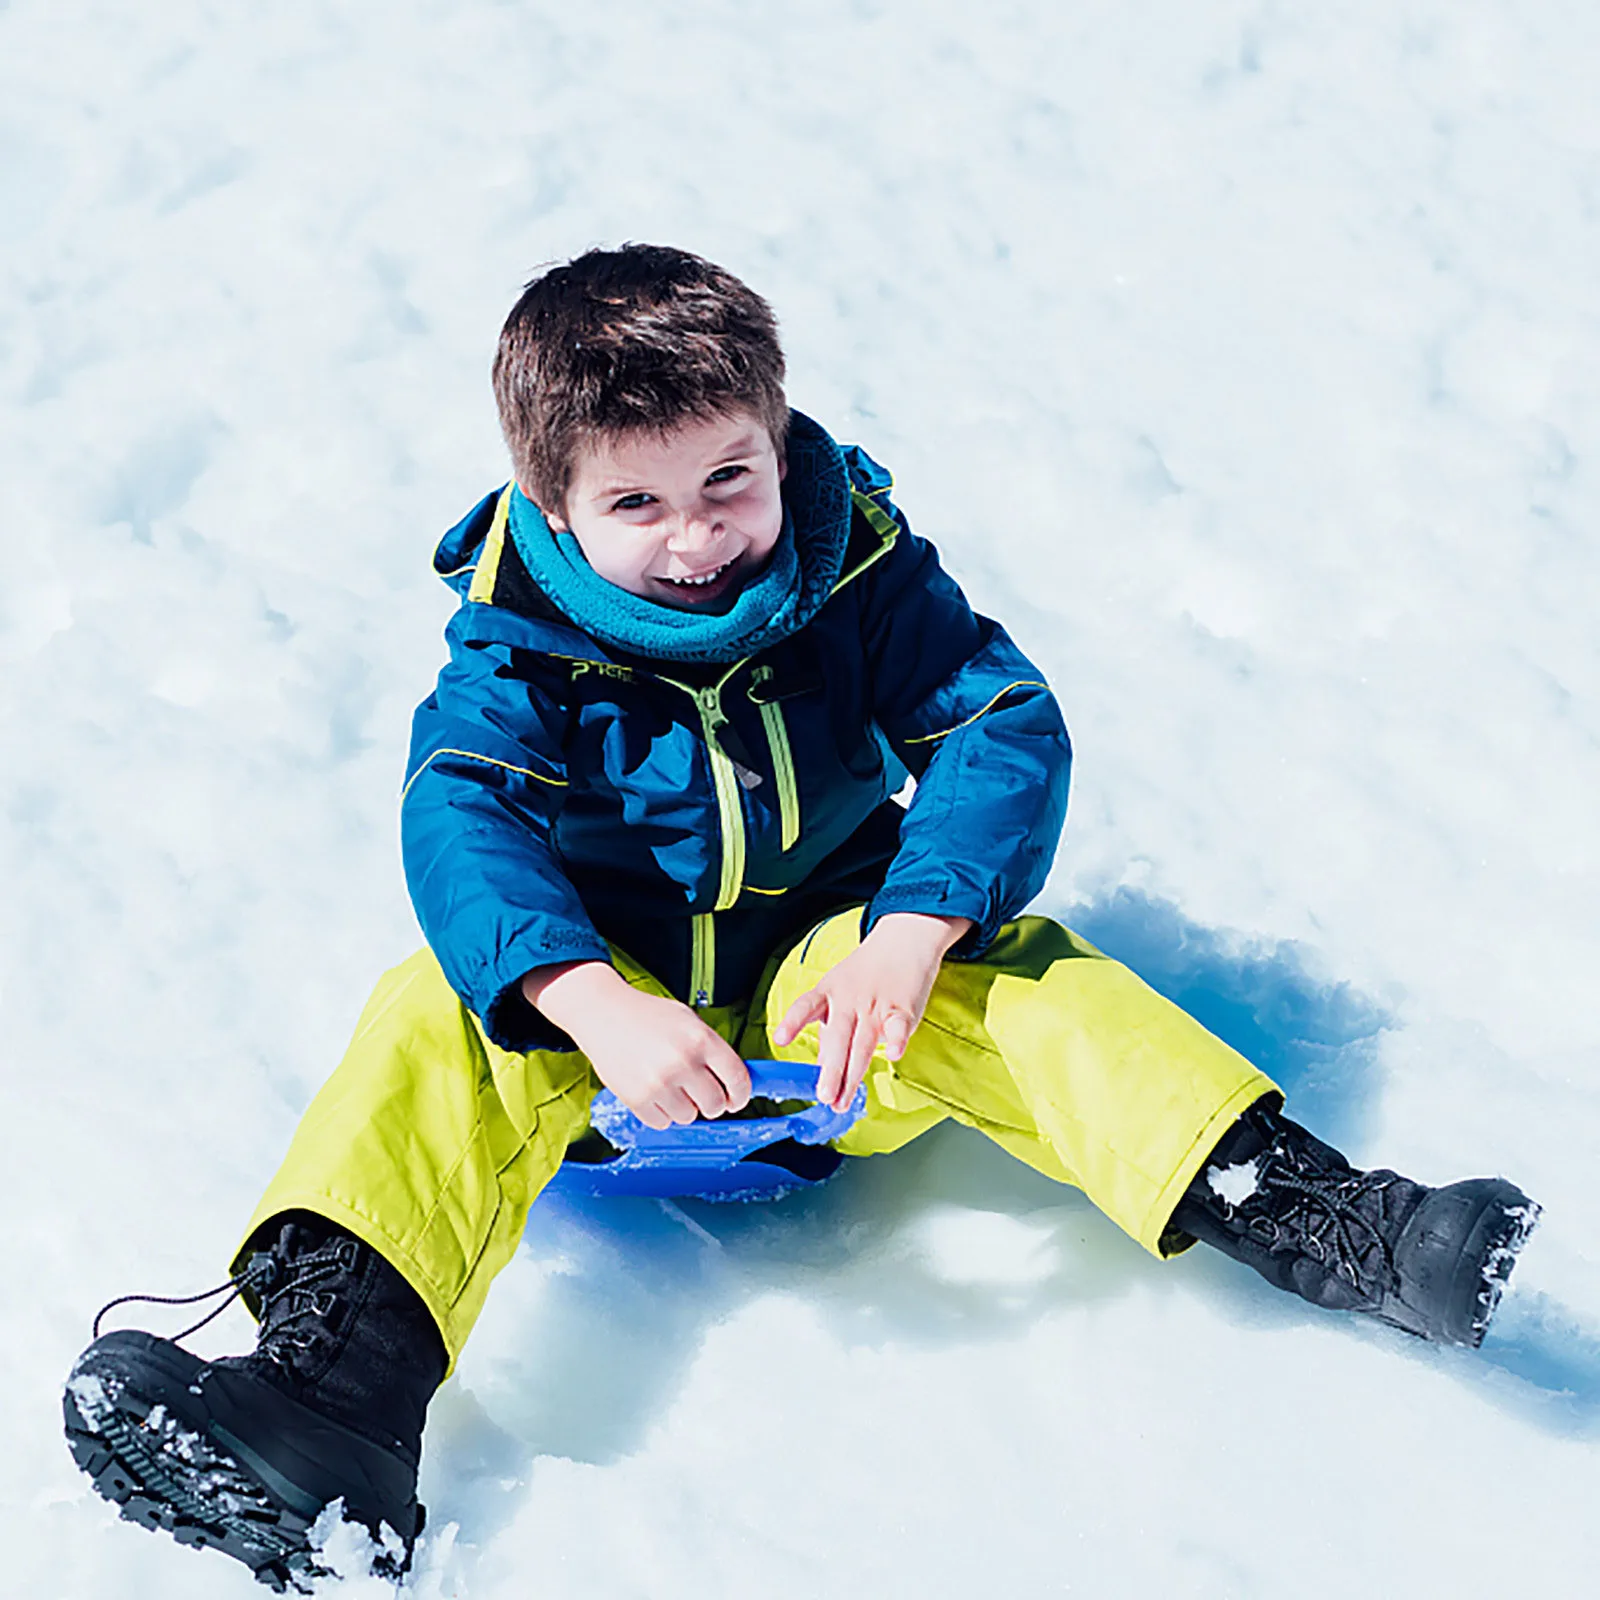 Zimné Vonkajšie Plastové Šport Zahustiť Deti, Dospelých Sneh SÁNKY SLEDge Lyžiarske Rada Sane Vonkajšie Trávy, Plastové Dosky Snehu Luge #TG